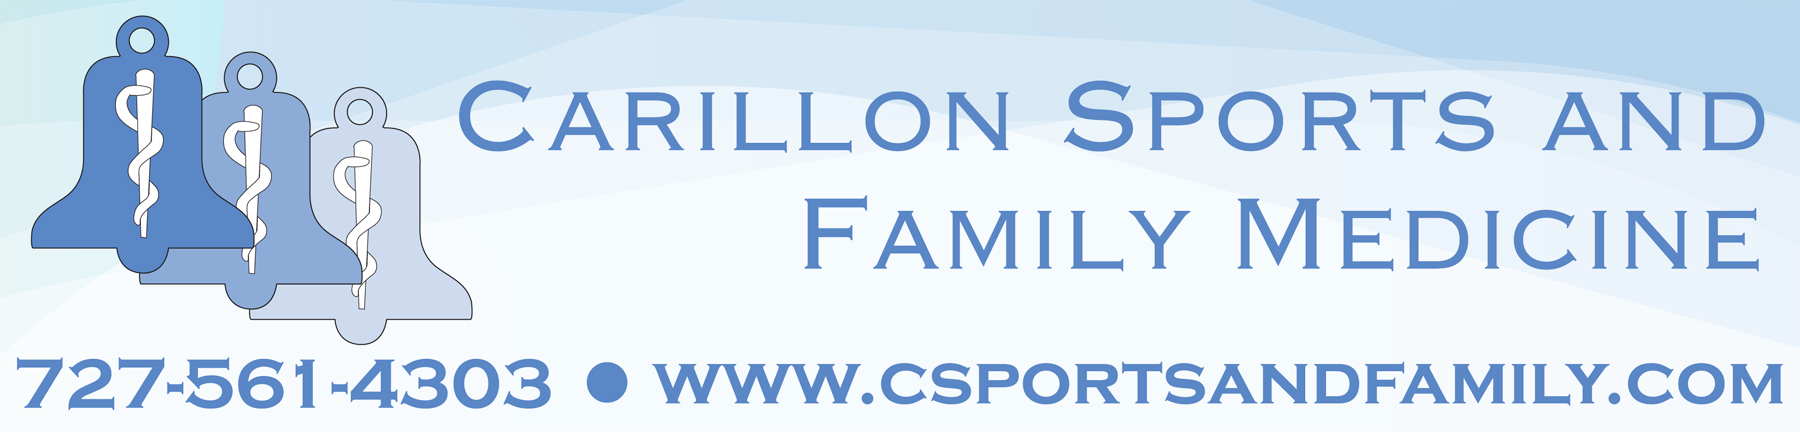 Carillon Sports and Family Medicine